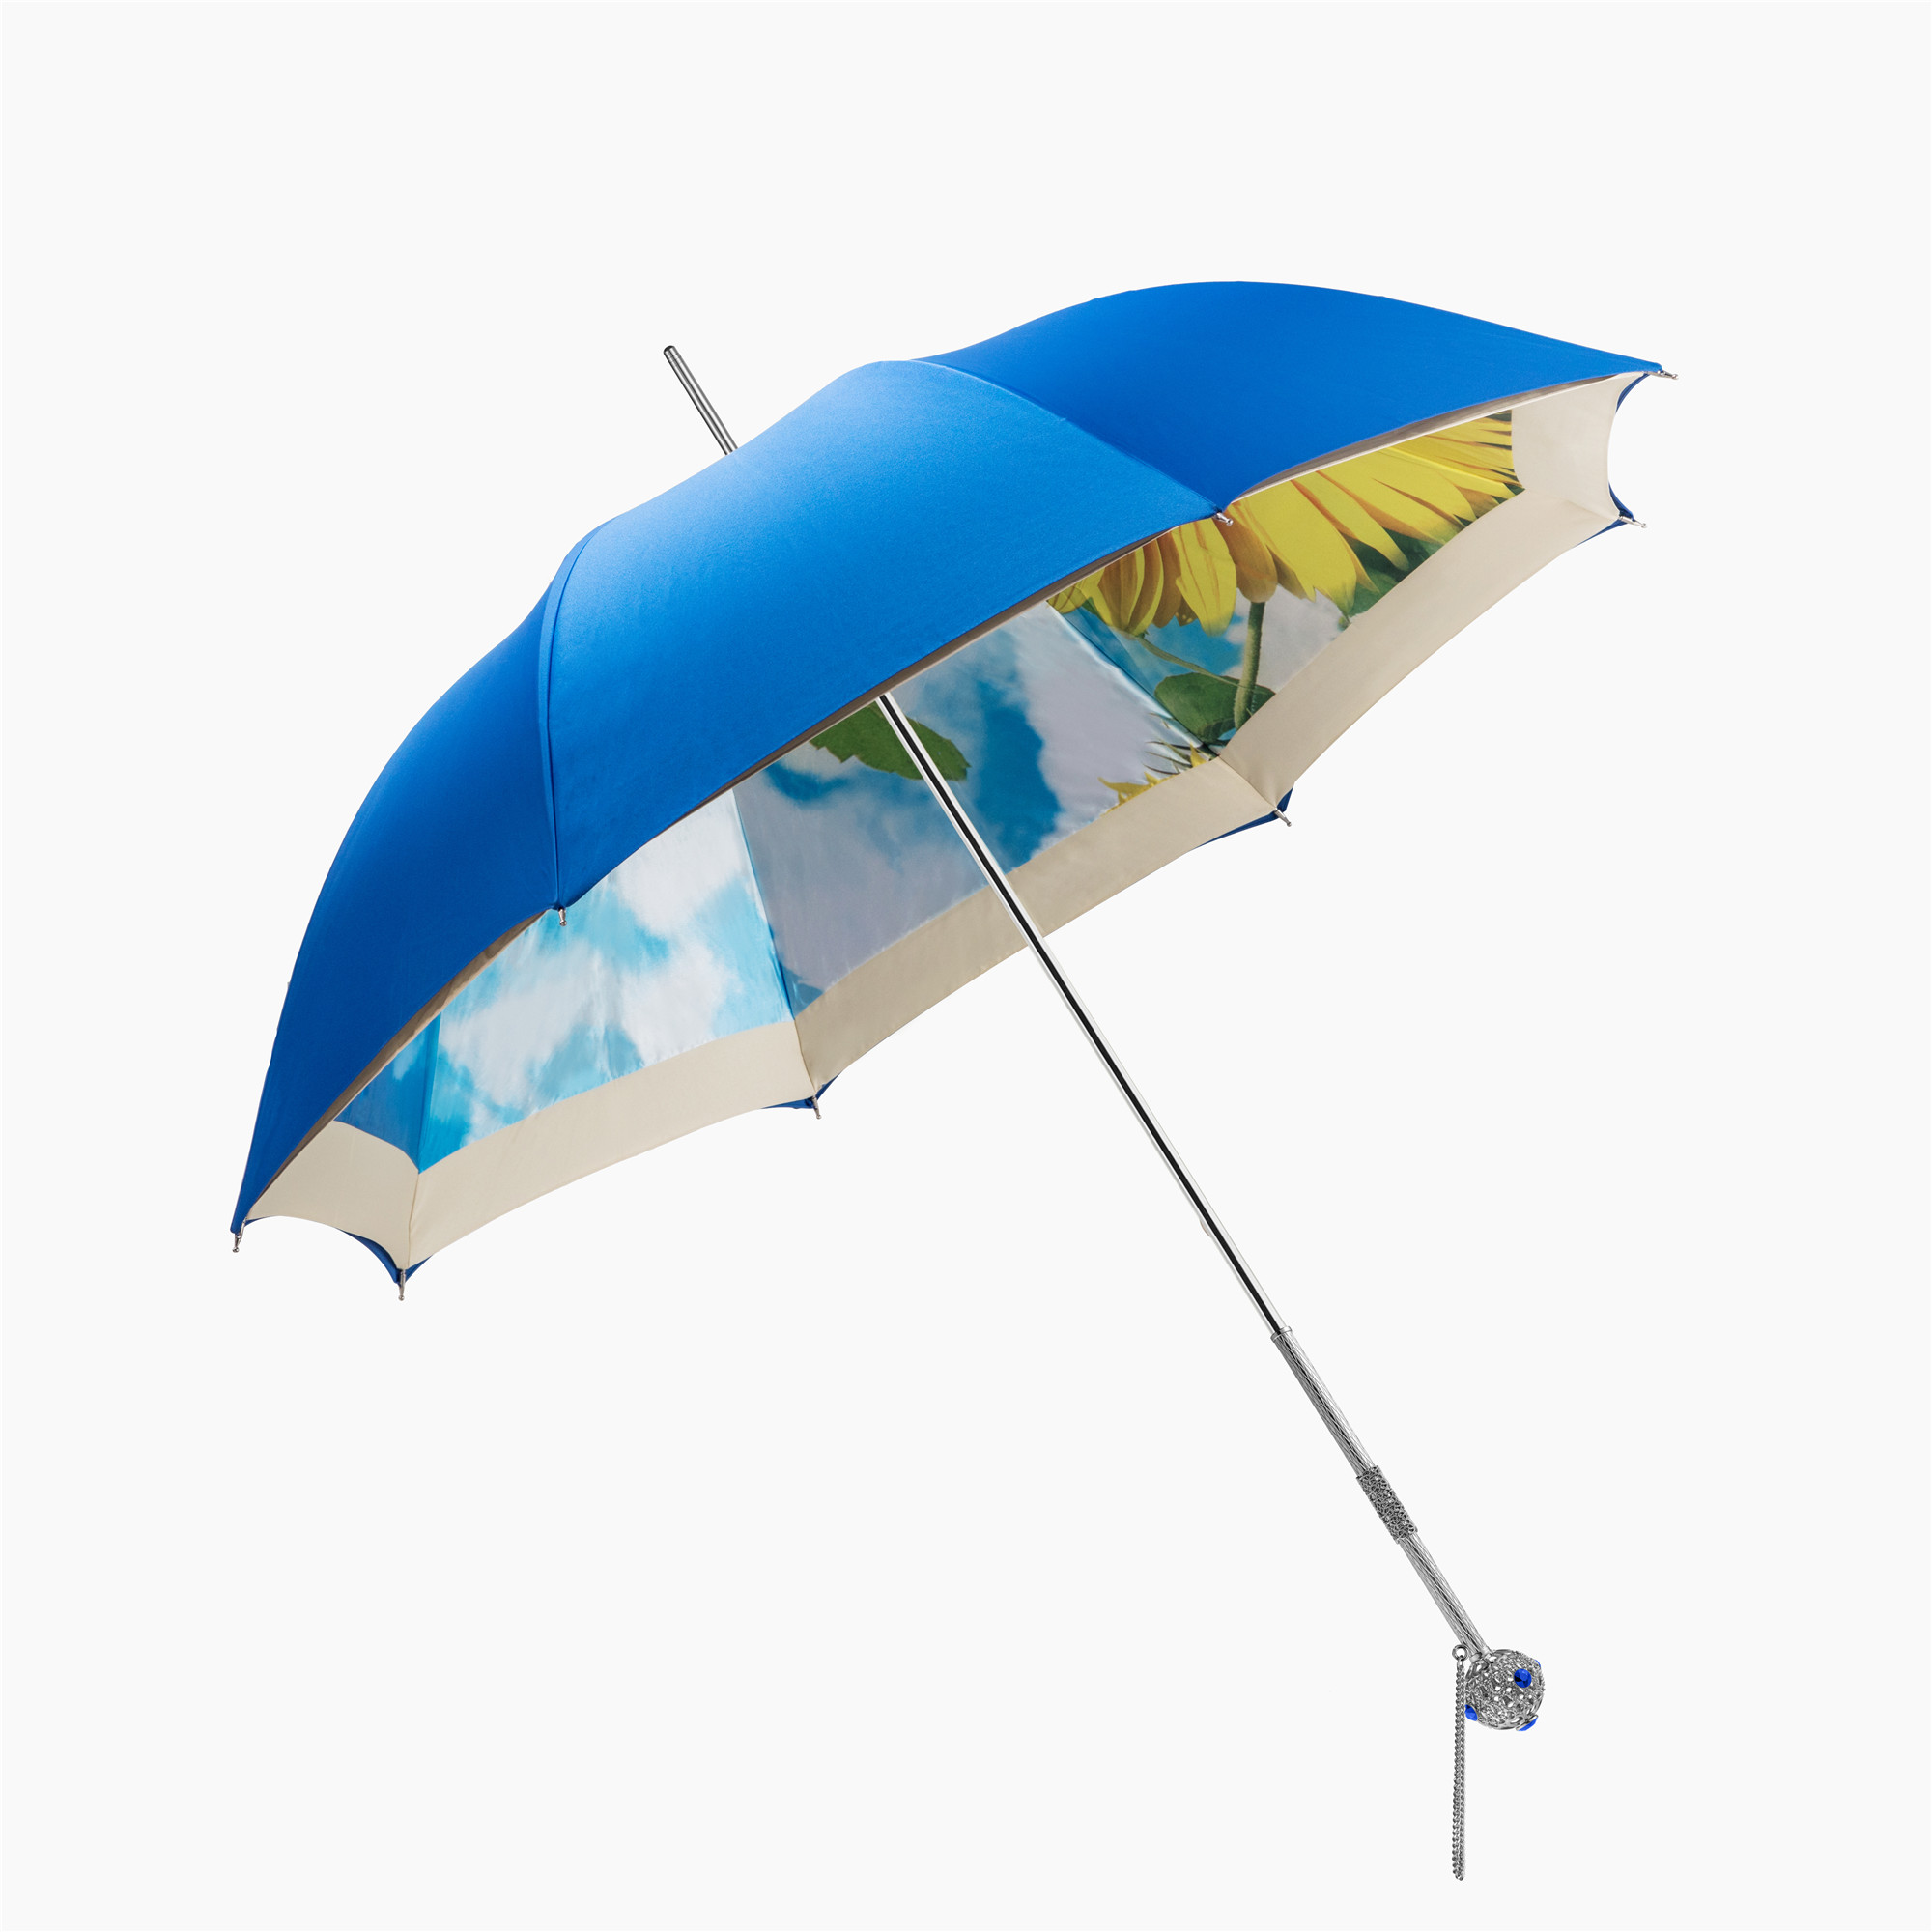 Exquisite straight double  umbrella